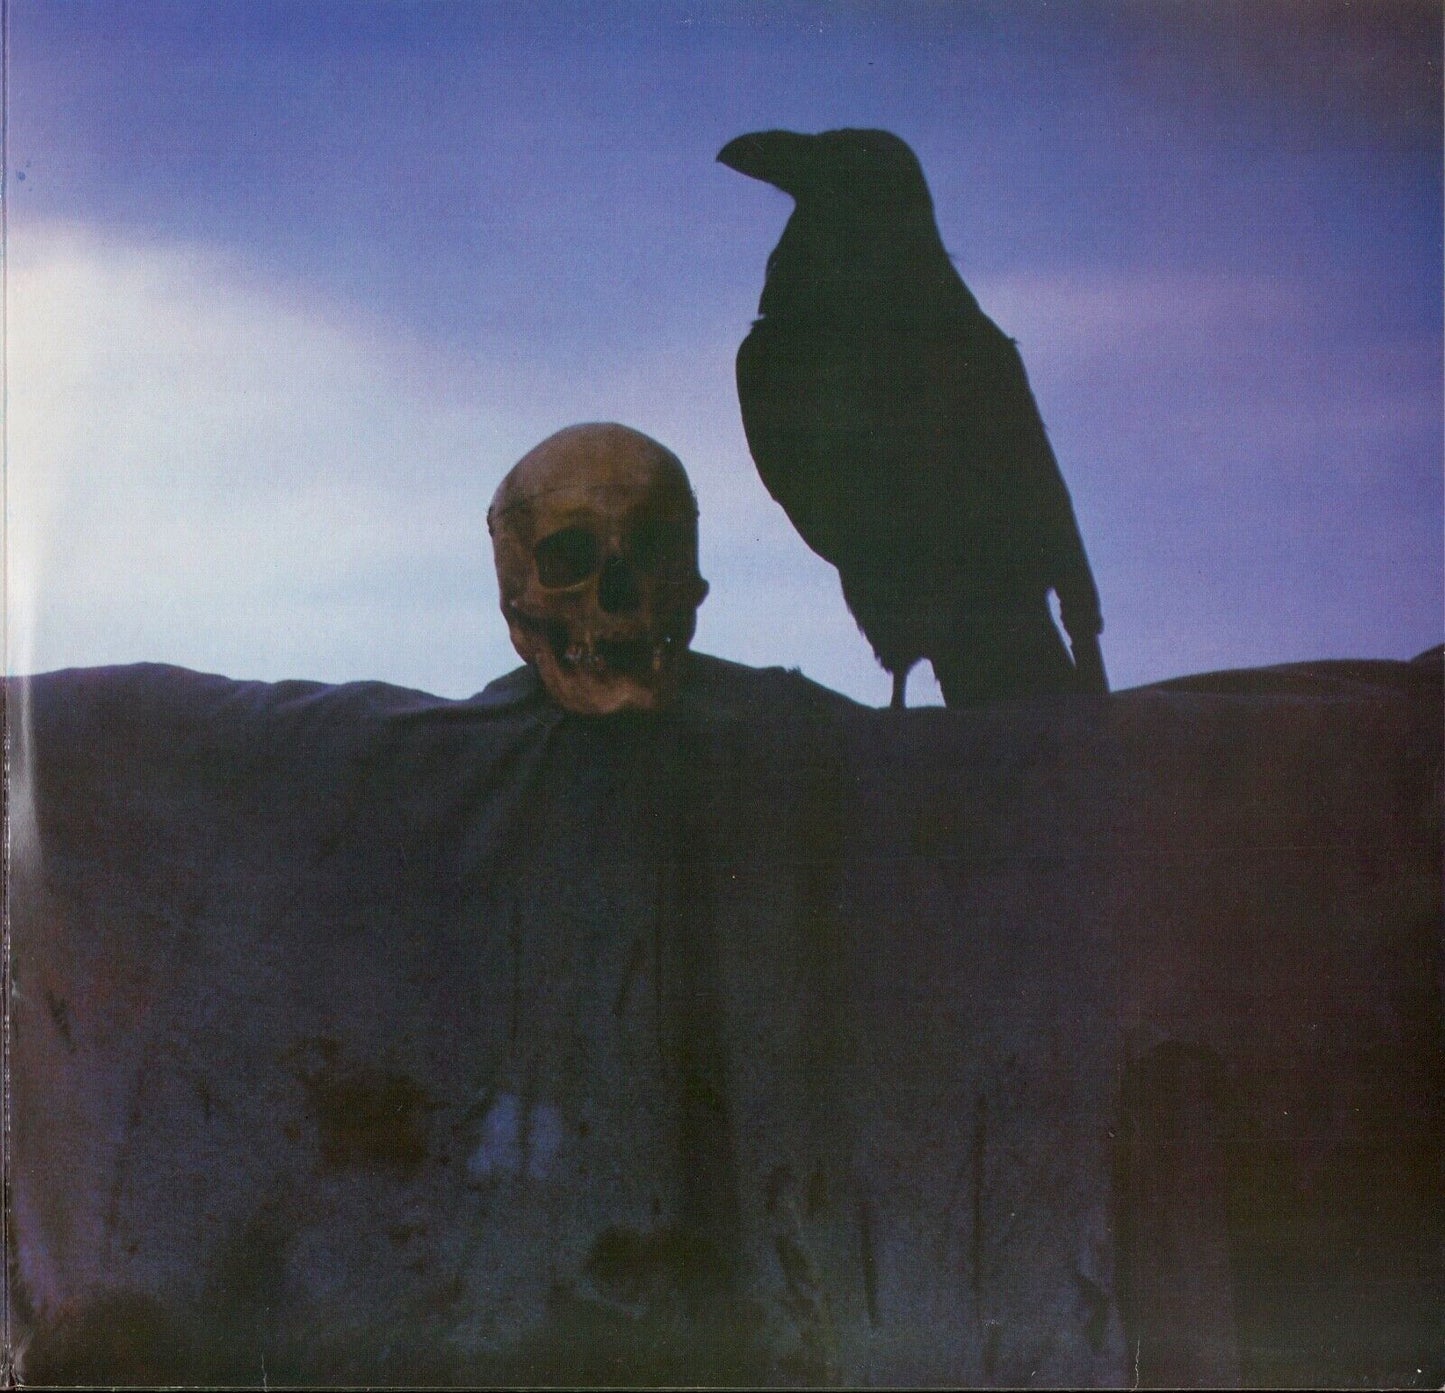 Raven - The Devil's Carrion Vinyl 2LP